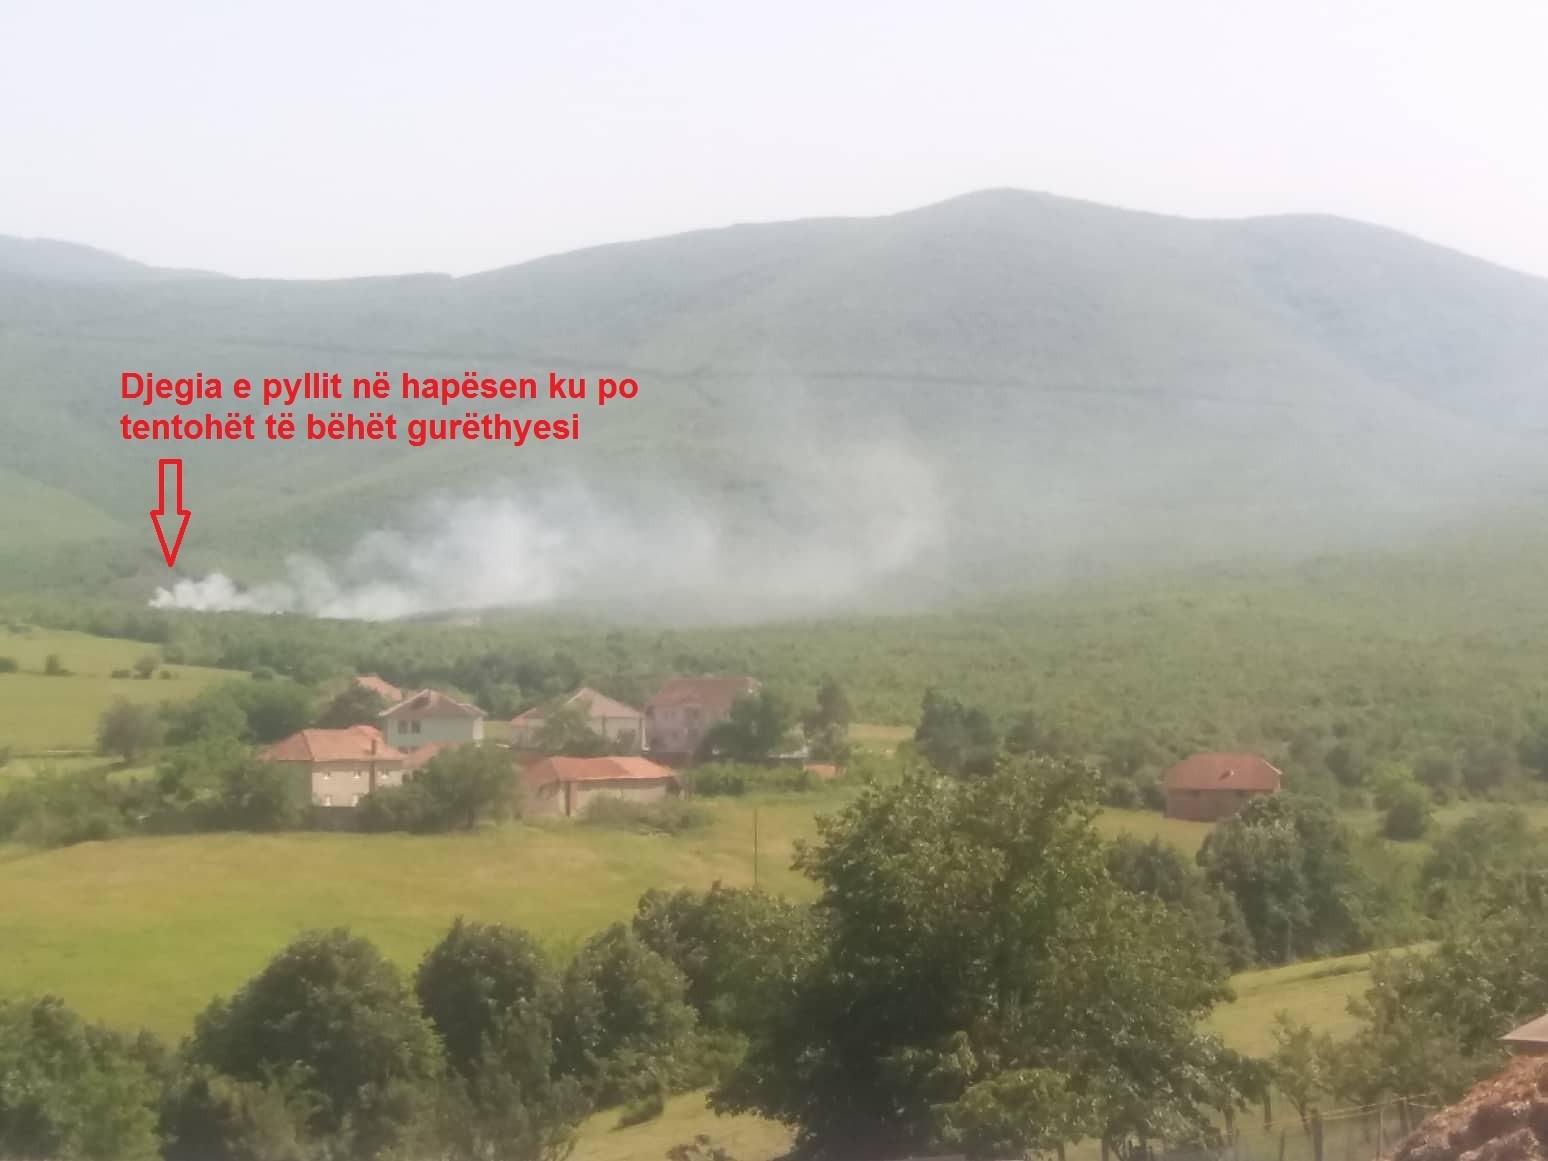 Protestohet në mbrojtje të natyrës në fshatin Kusar të Gjakovës